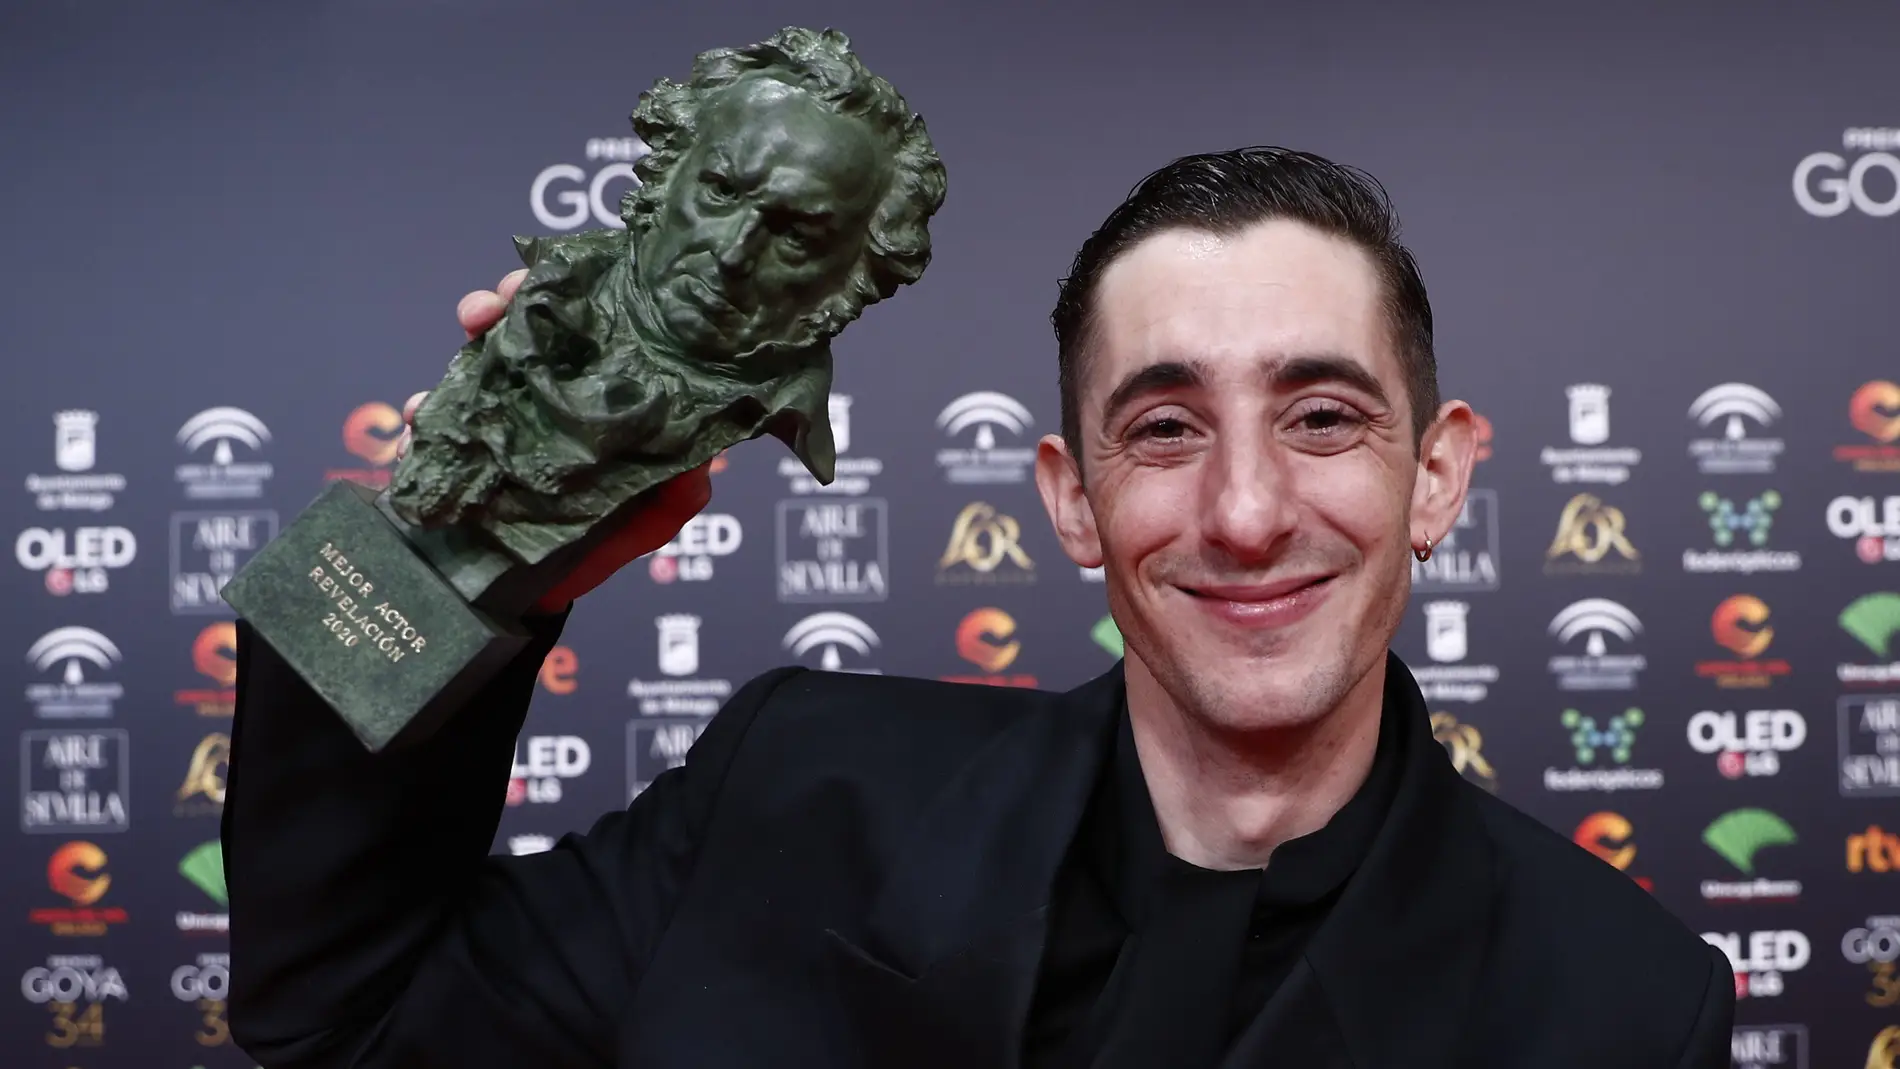 Enric Auquer con su Goya a Mejor Actor Revelación por 'Quien a hierro mata'